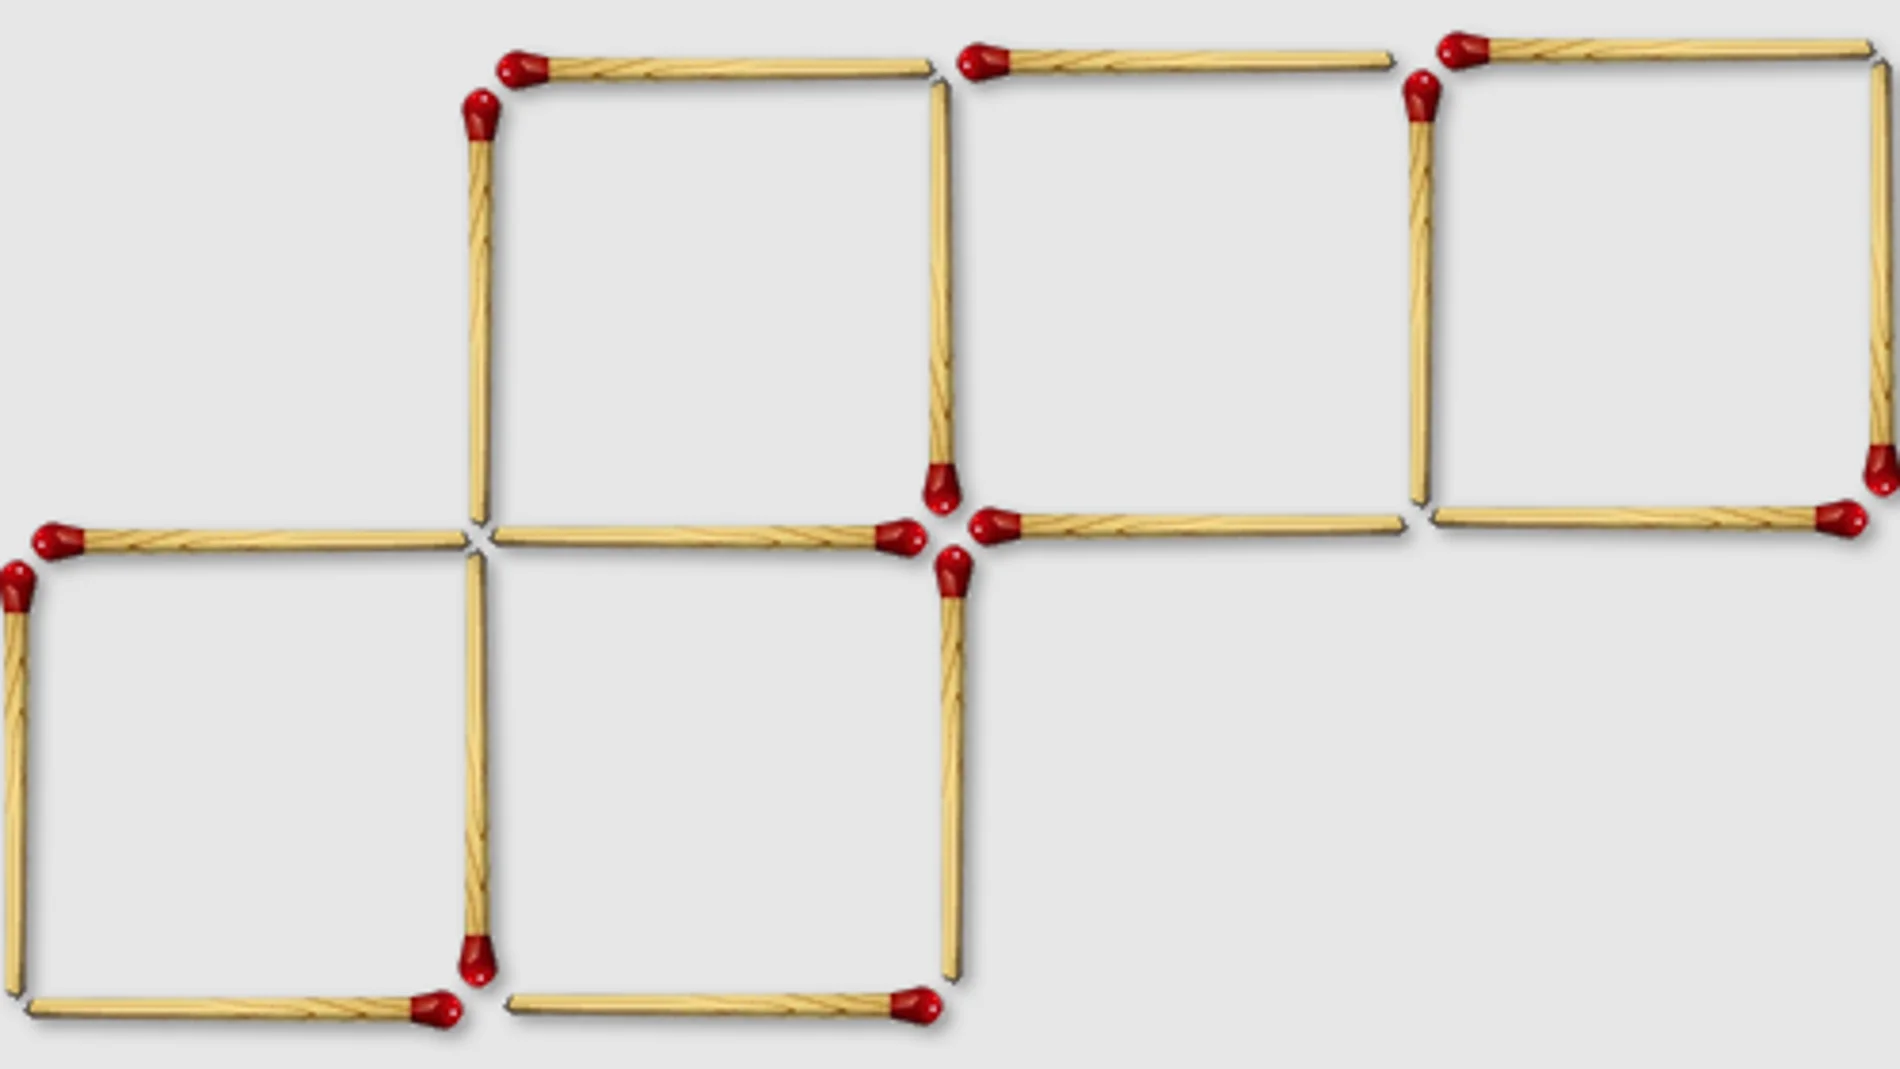 El reto consiste en mover dos de las cerillas para formar cuatro cuadrados iguales, en lugar de los cinco que hay actualmente en la imagen